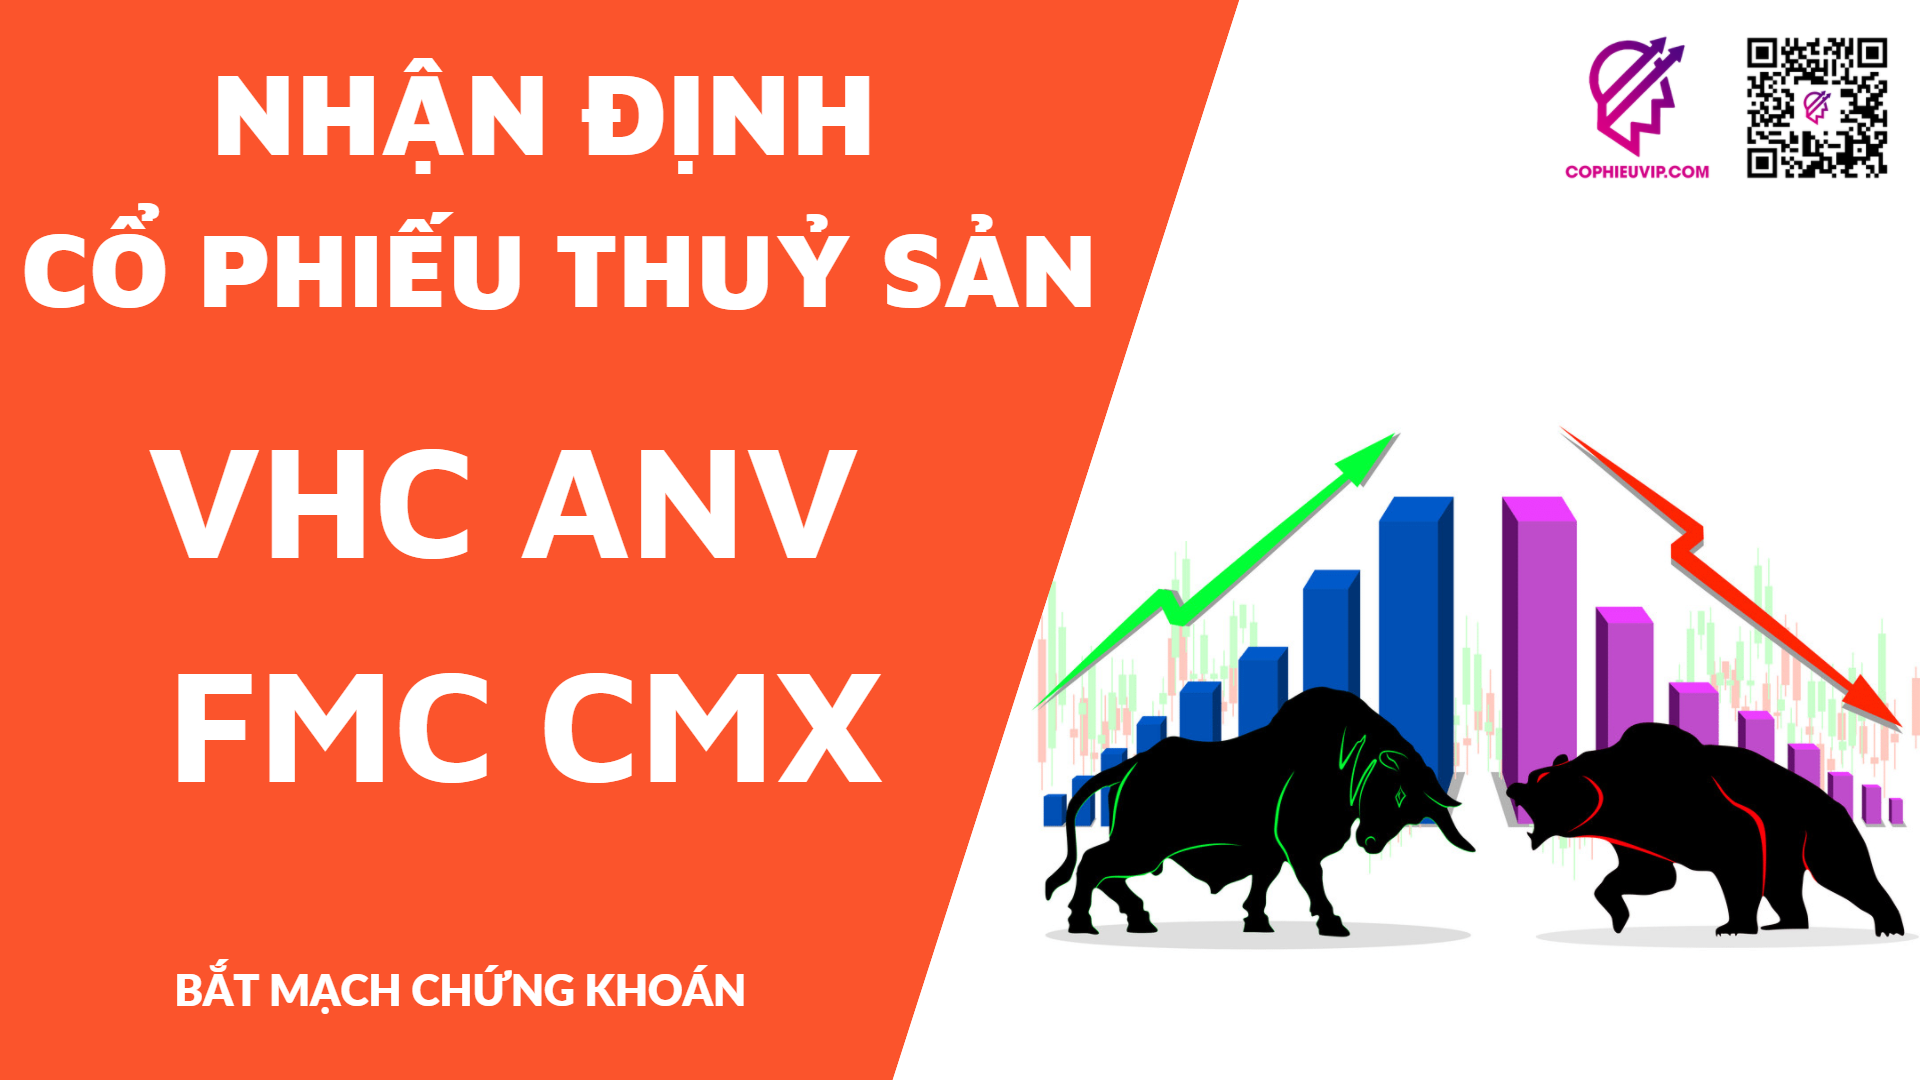 Nhận định cổ phiếu thuỷ sản: VHC ANV FMC CMX